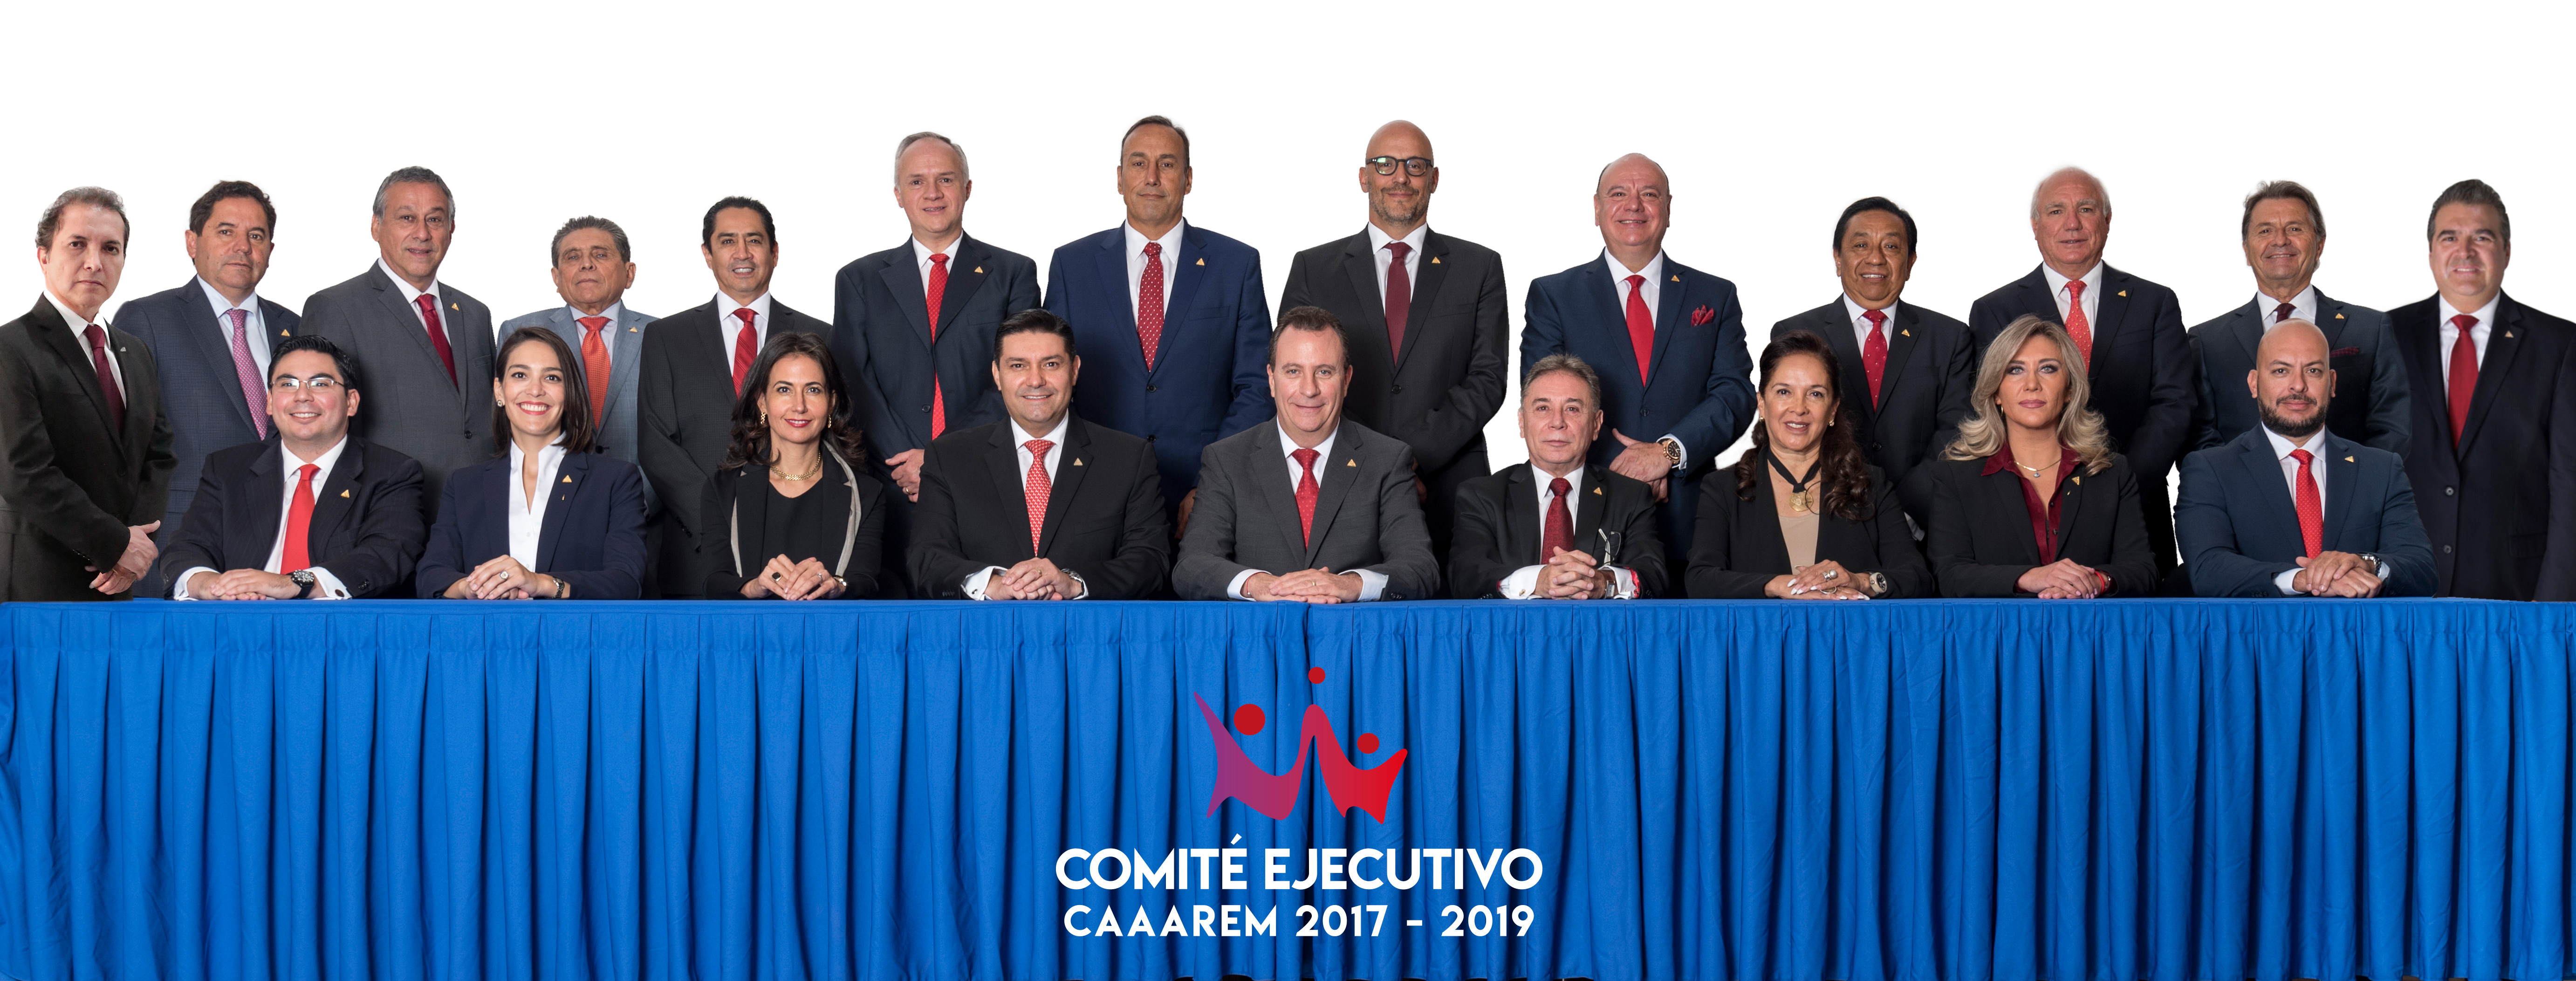 Comité Ejecutivo Nacional CAAAREM 2017 - 2019